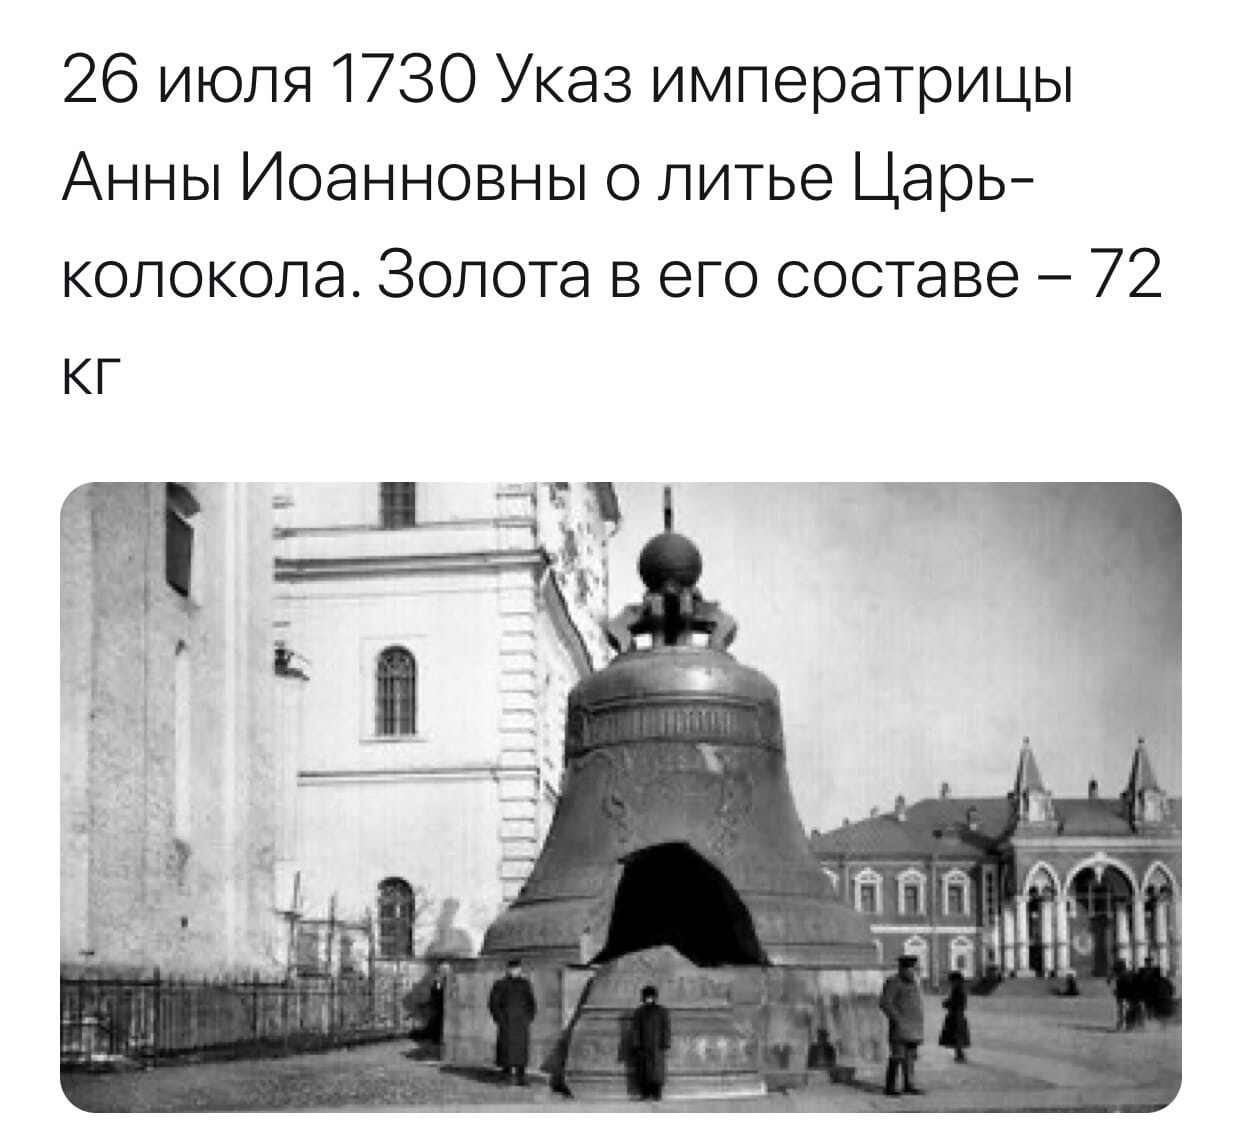 Царь колокол в Москве